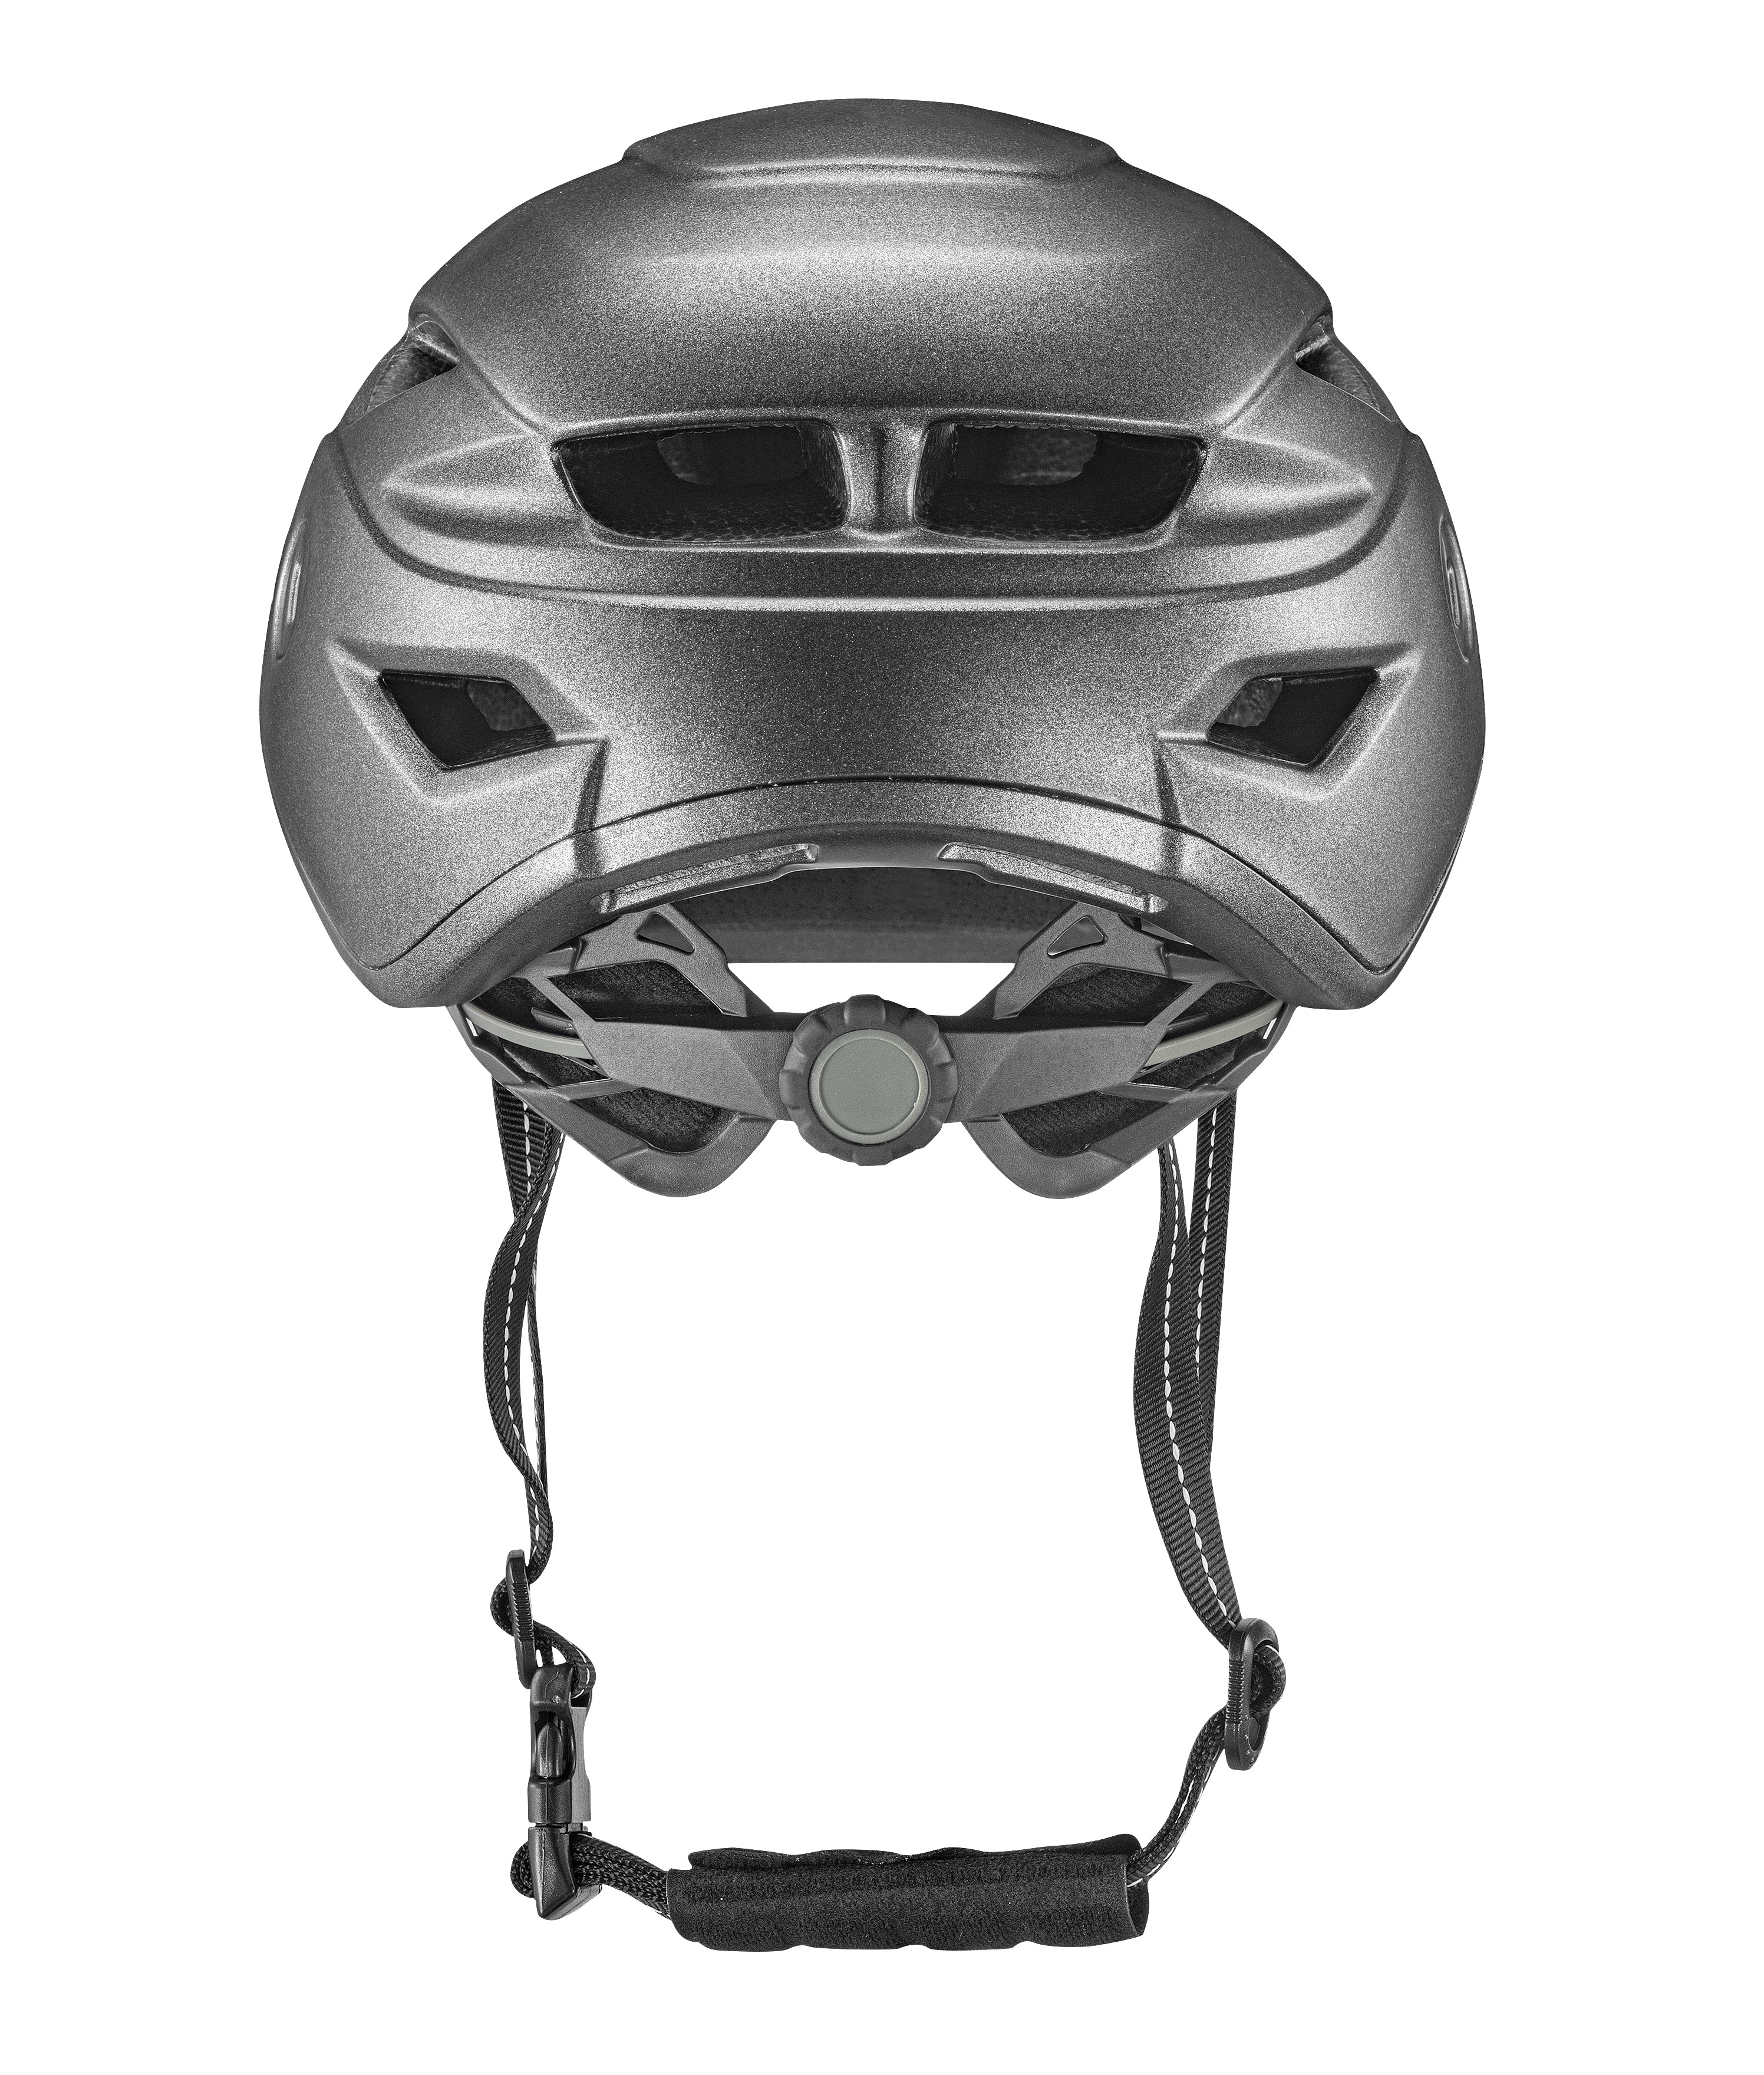 B3-10 Urban Bicycle Helmet